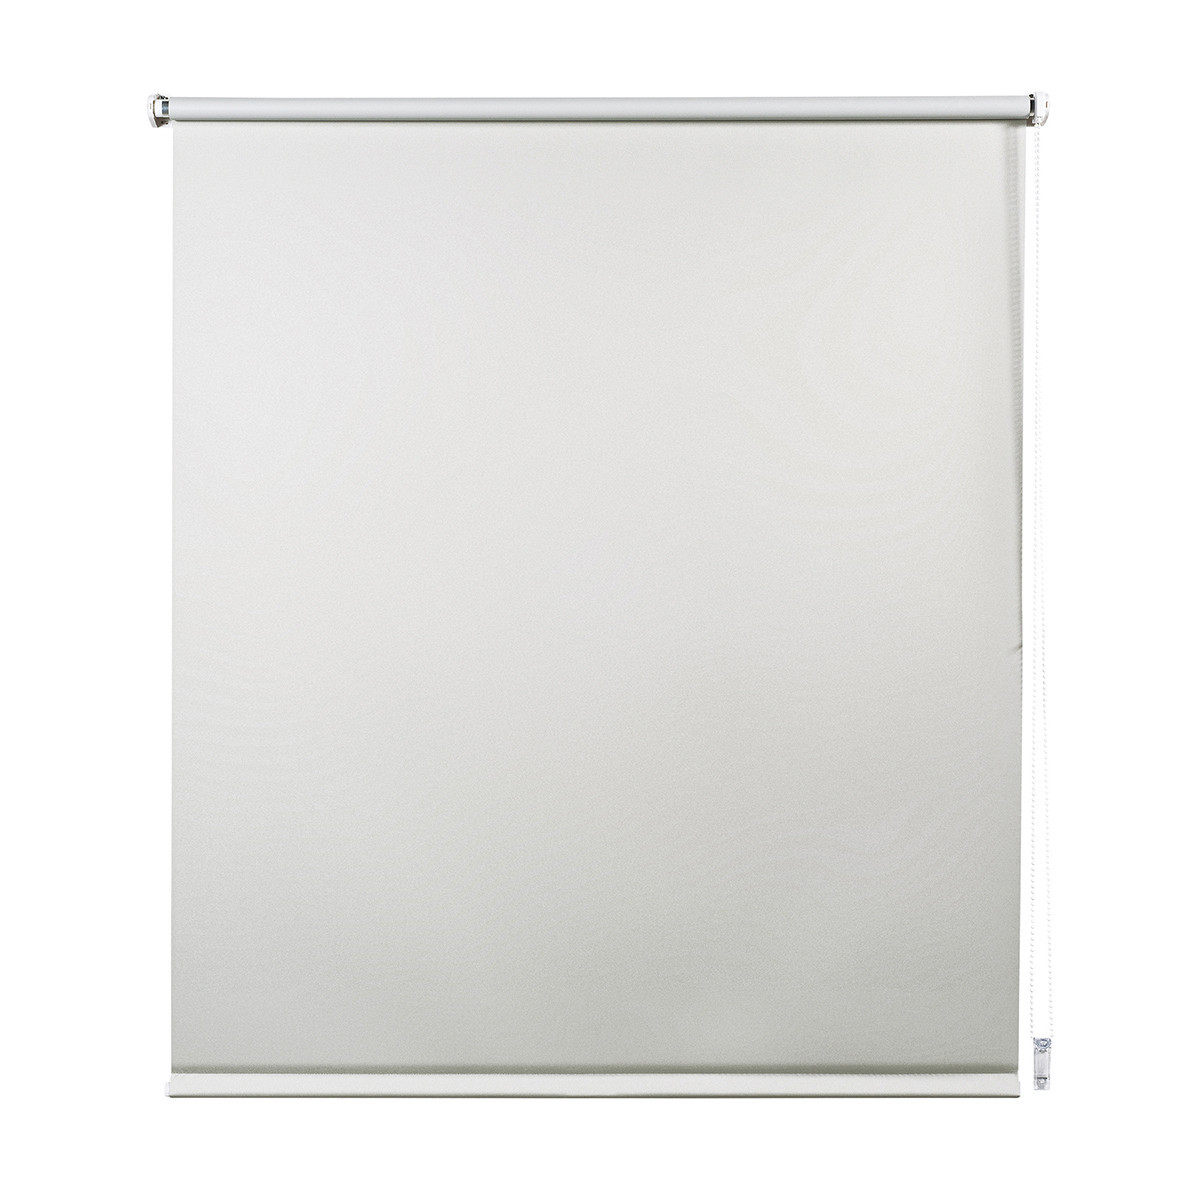 Ancho x Alto Blanco Crema 95 x 160 cm Incluye Material de Montaje Tenebra Estor Opaco con o sin Taladrar Victoria M 